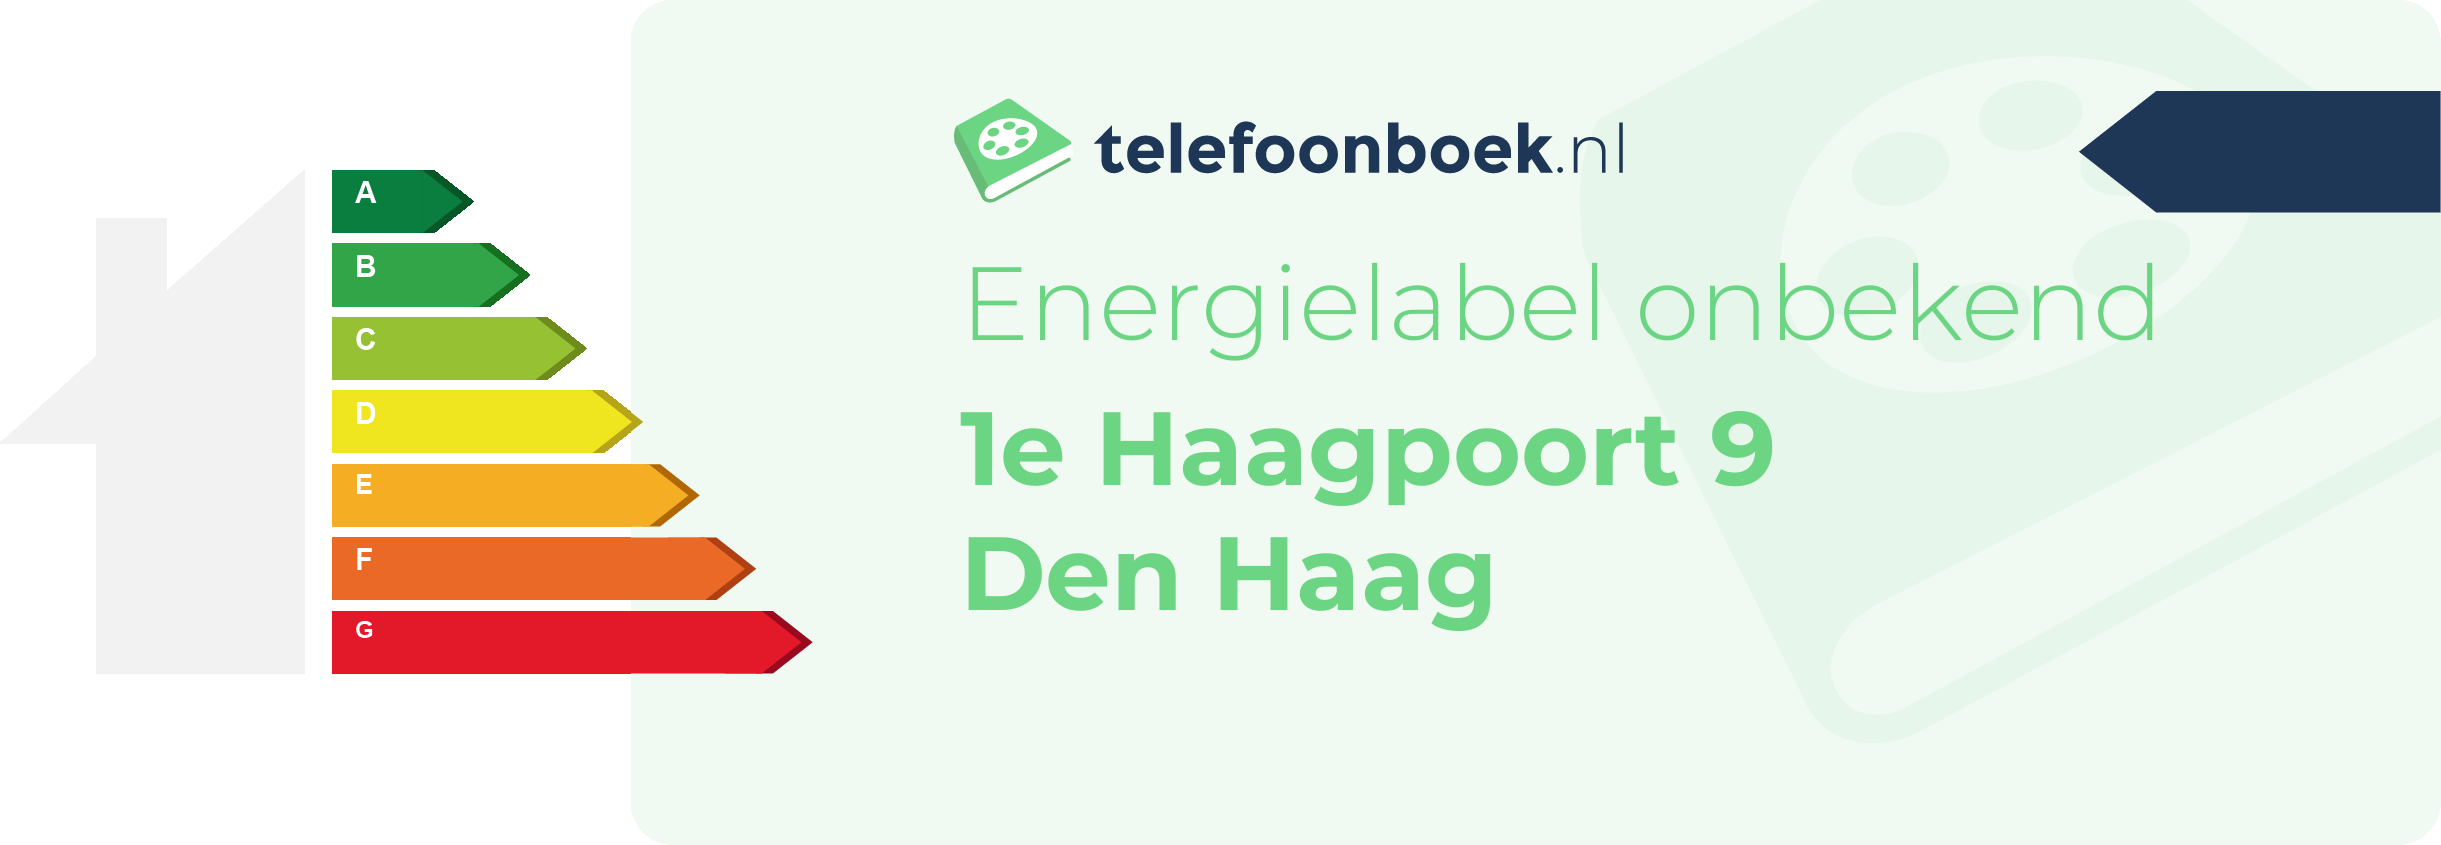 Energielabel 1e Haagpoort 9 Den Haag